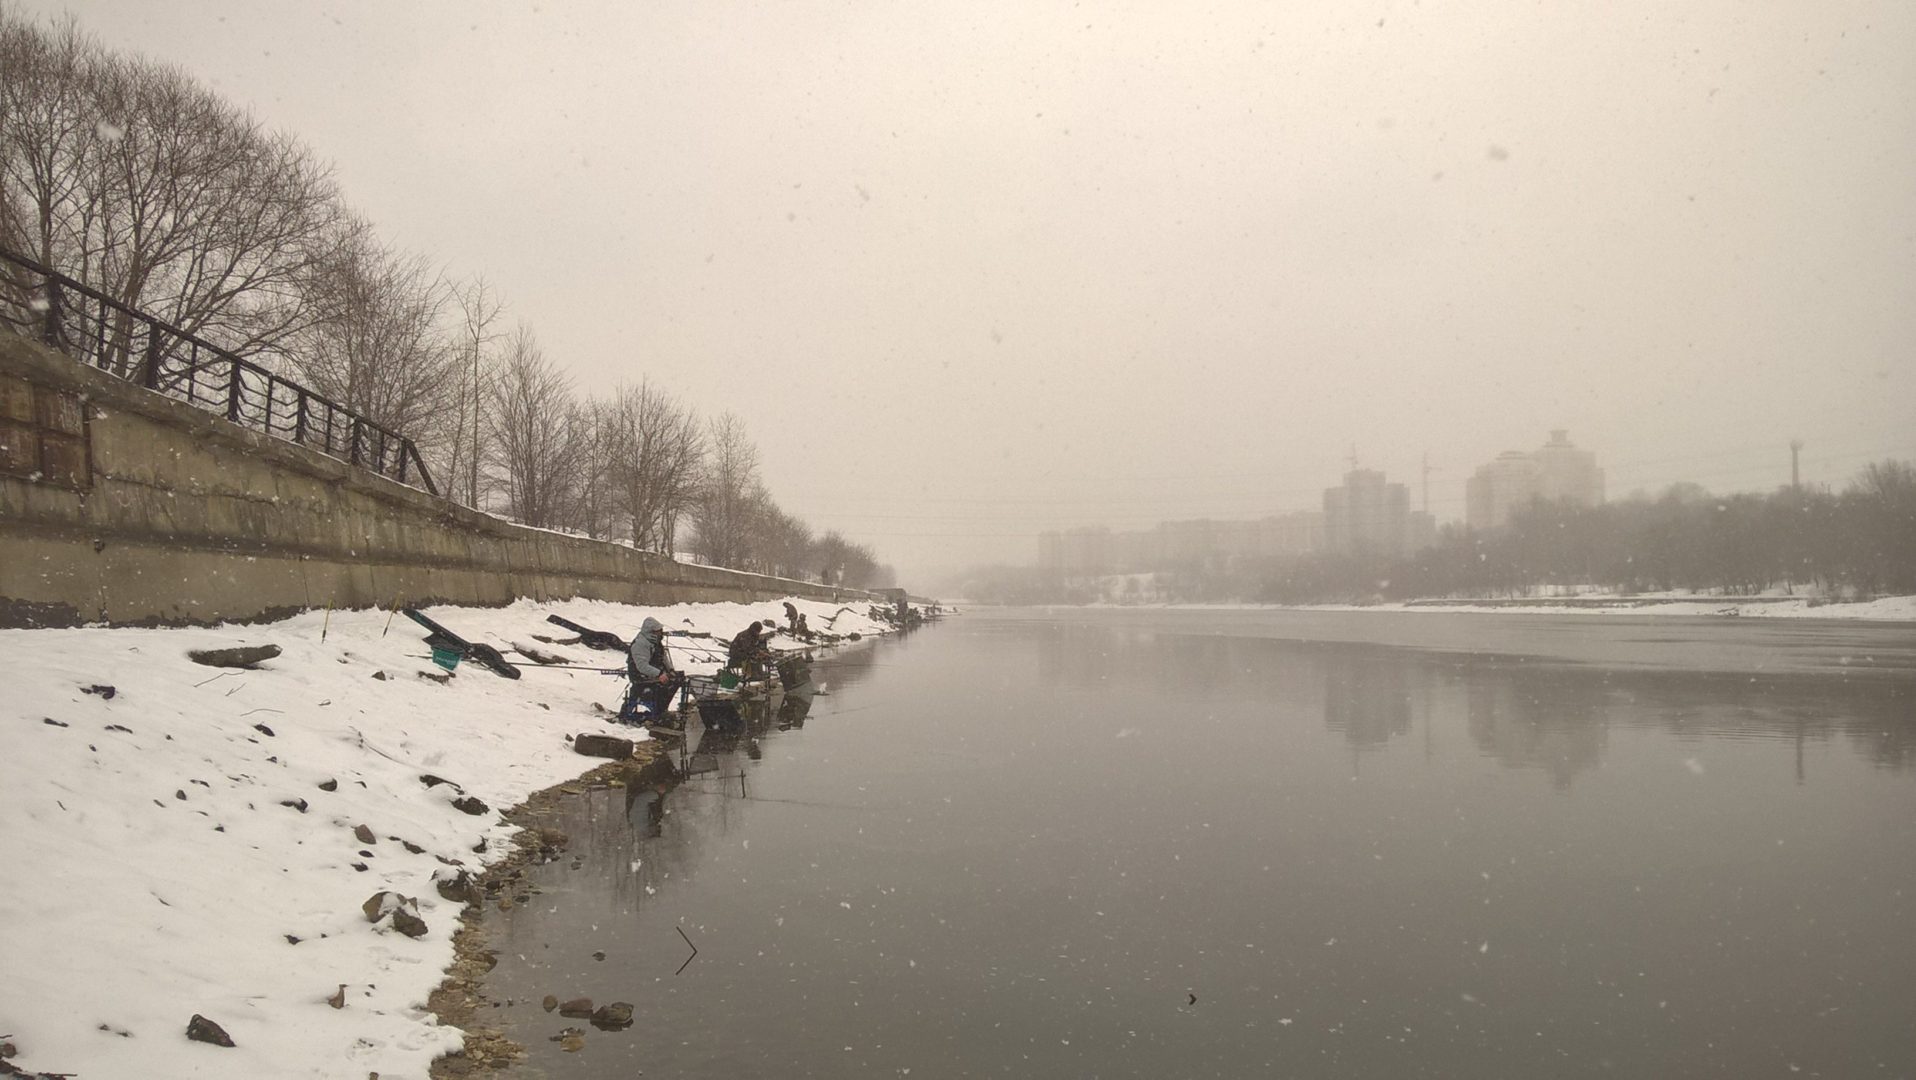 Фото любители фидерной ловли на берегу зимней Москвы-реки, примерно в месте, где был пойман почти двухкилошный судак на ультралайт